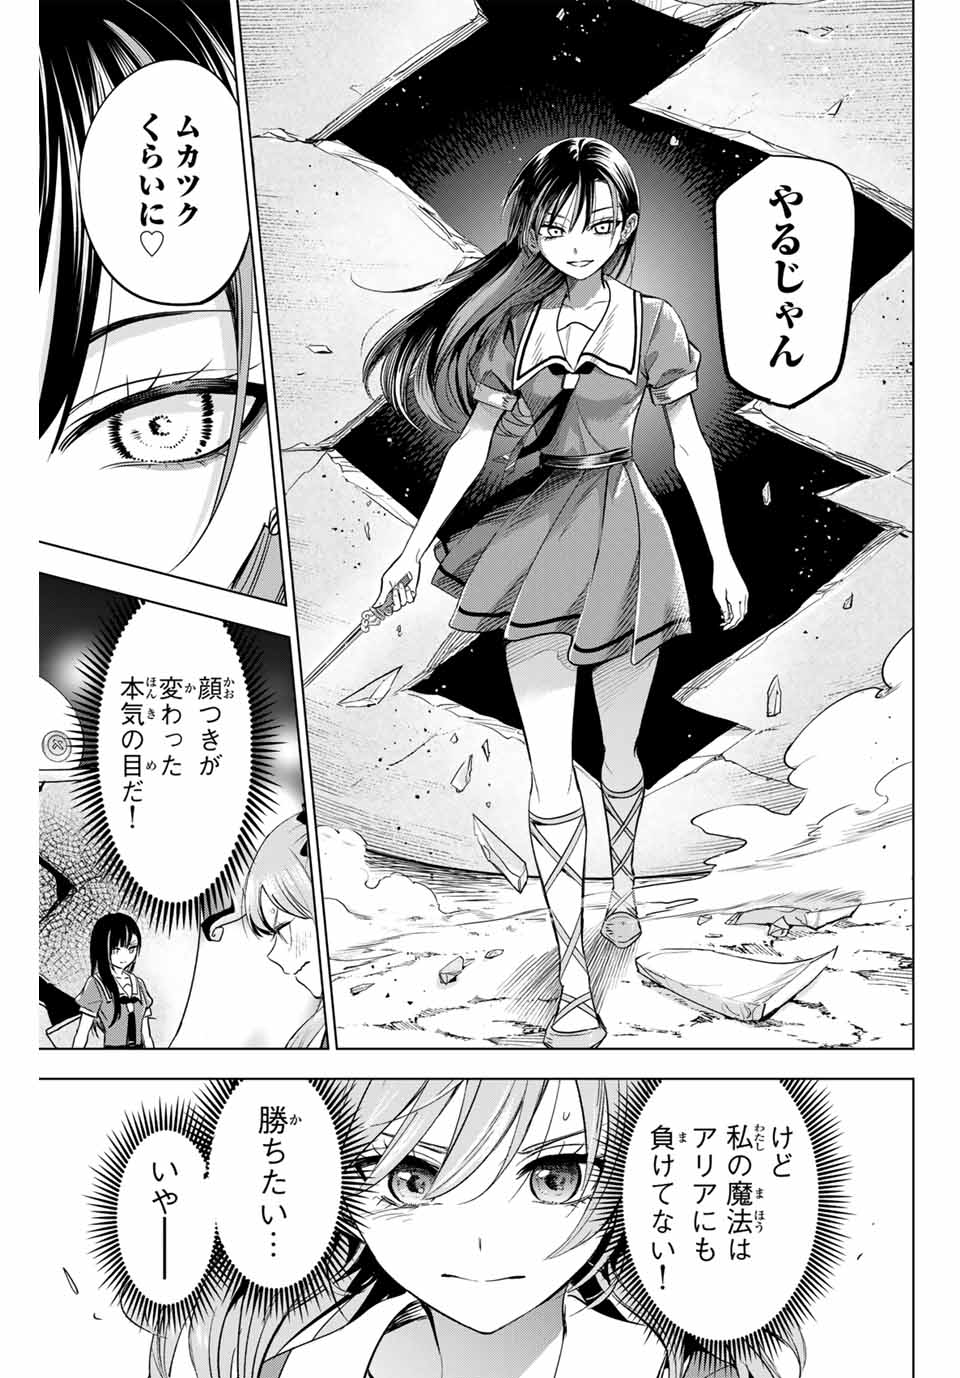 Kuroneko to Majo no Kyoushitsu - Chapter 53 - Page 23